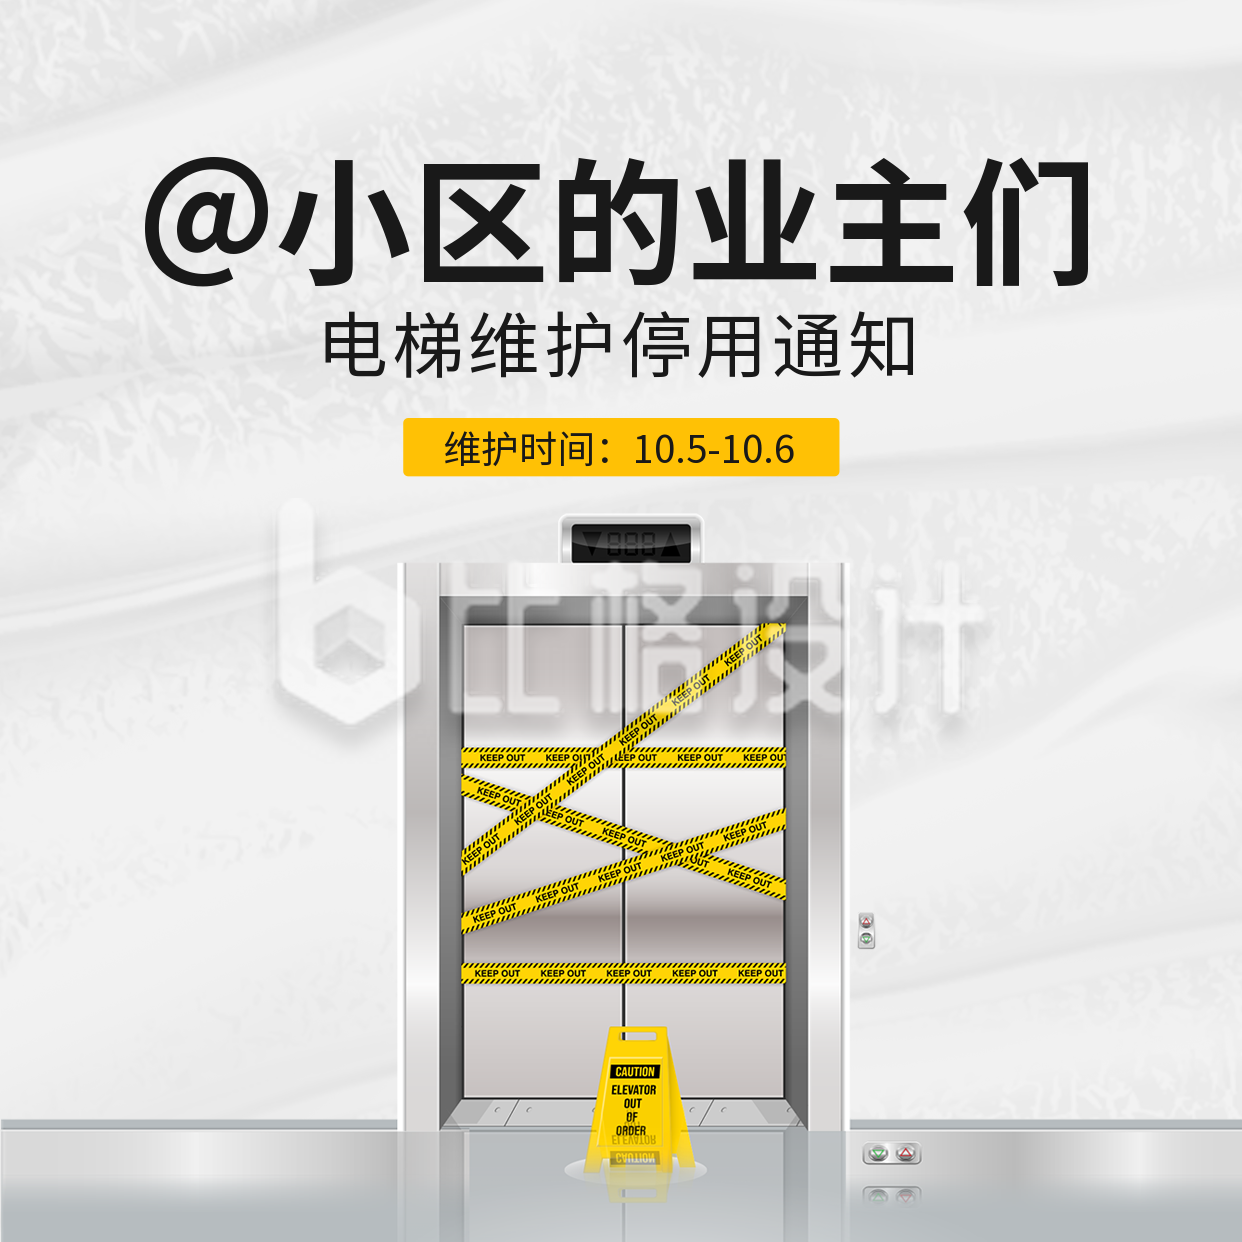 物业通知电梯维护方形海报